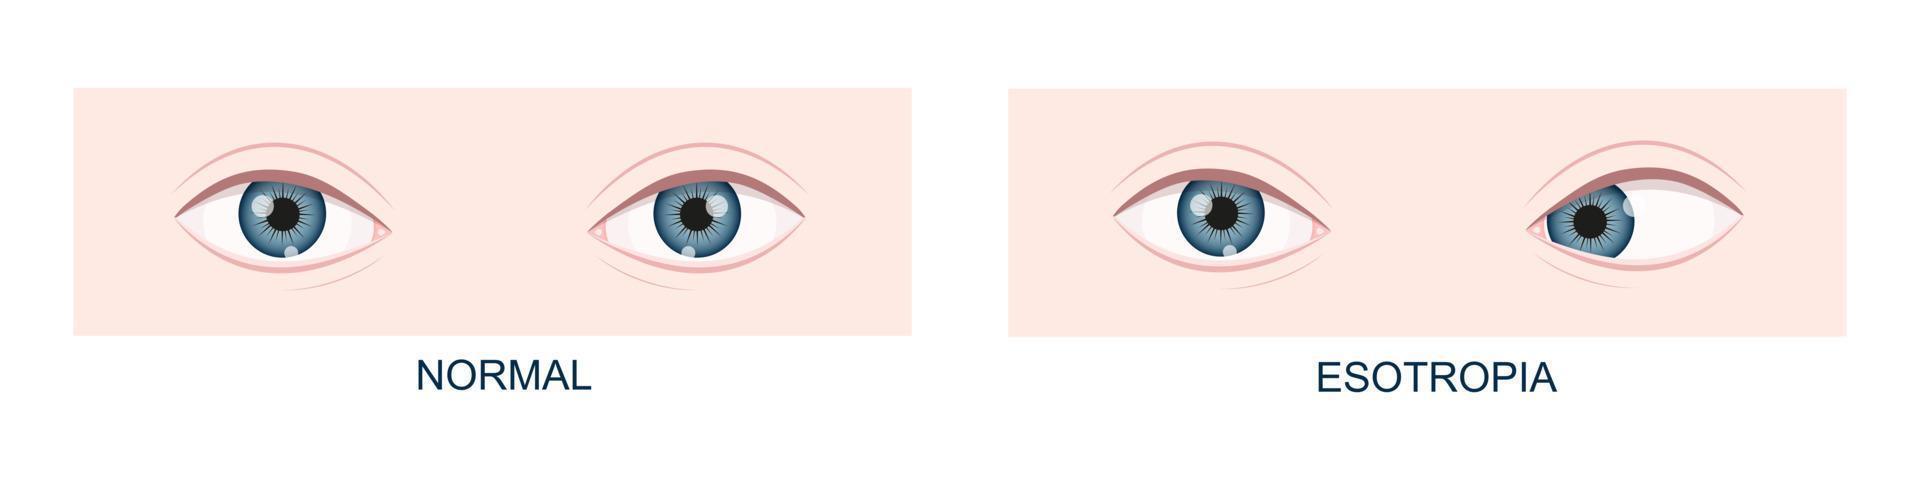 esotropia. estrabismo horizontal antes e depois da cirurgia. desalinhamento ocular, condição vesga. olhos humanos saudáveis e com posição de olhar para dentro. visão dupla vetor